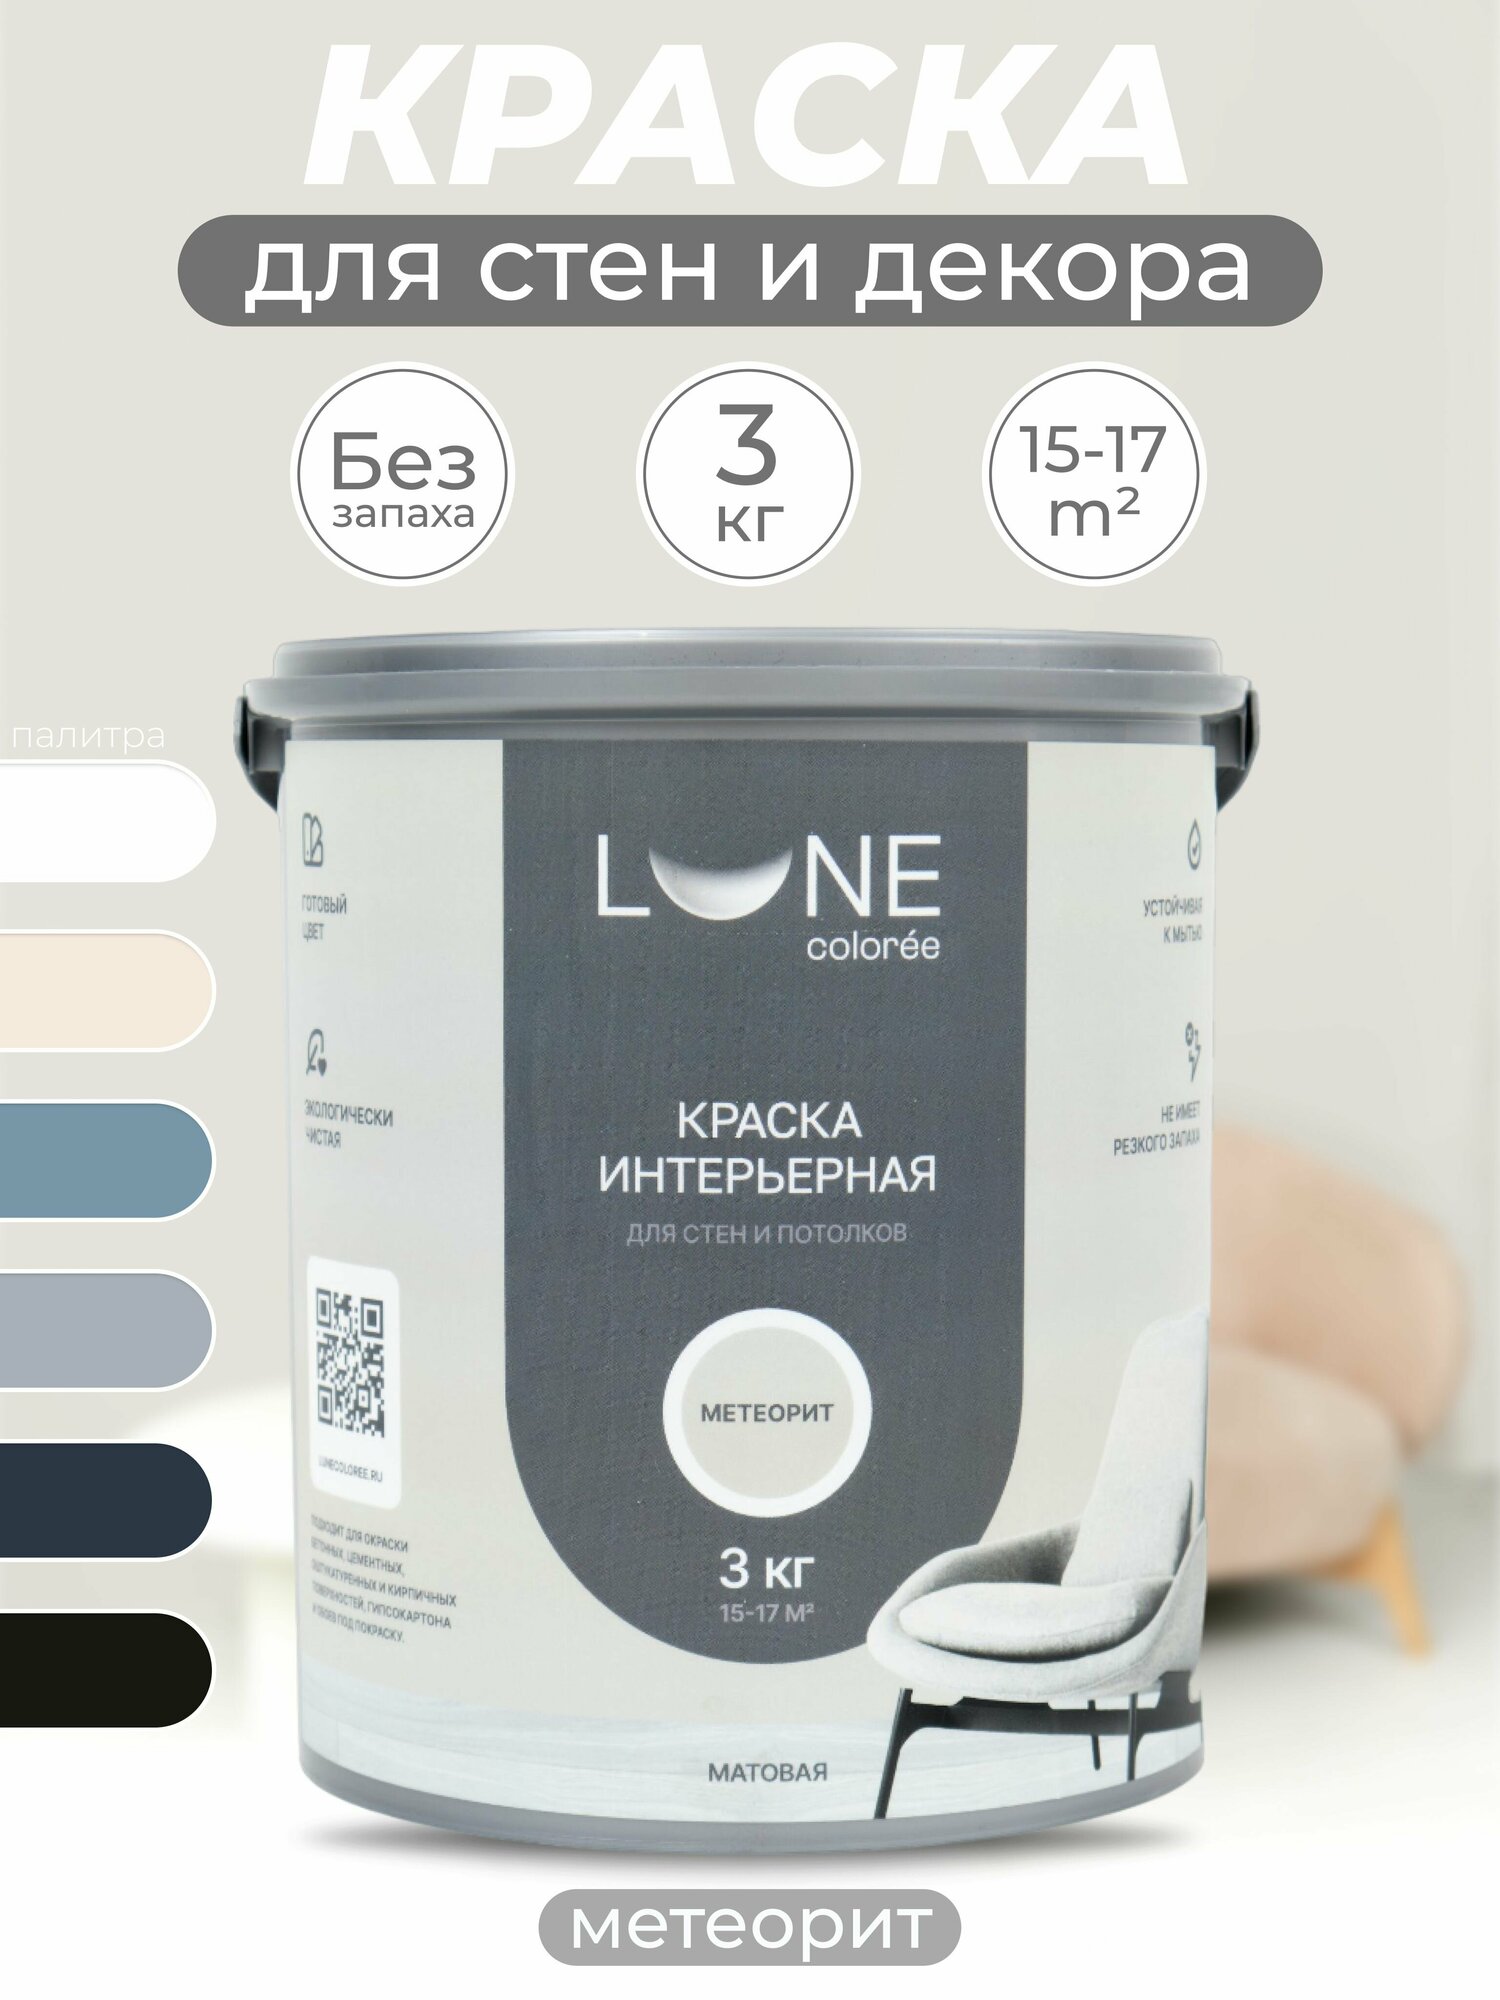 Интерьерная краска для стен и потолков Lune Coloree моющаяся, матовая, светло-серый 3кг